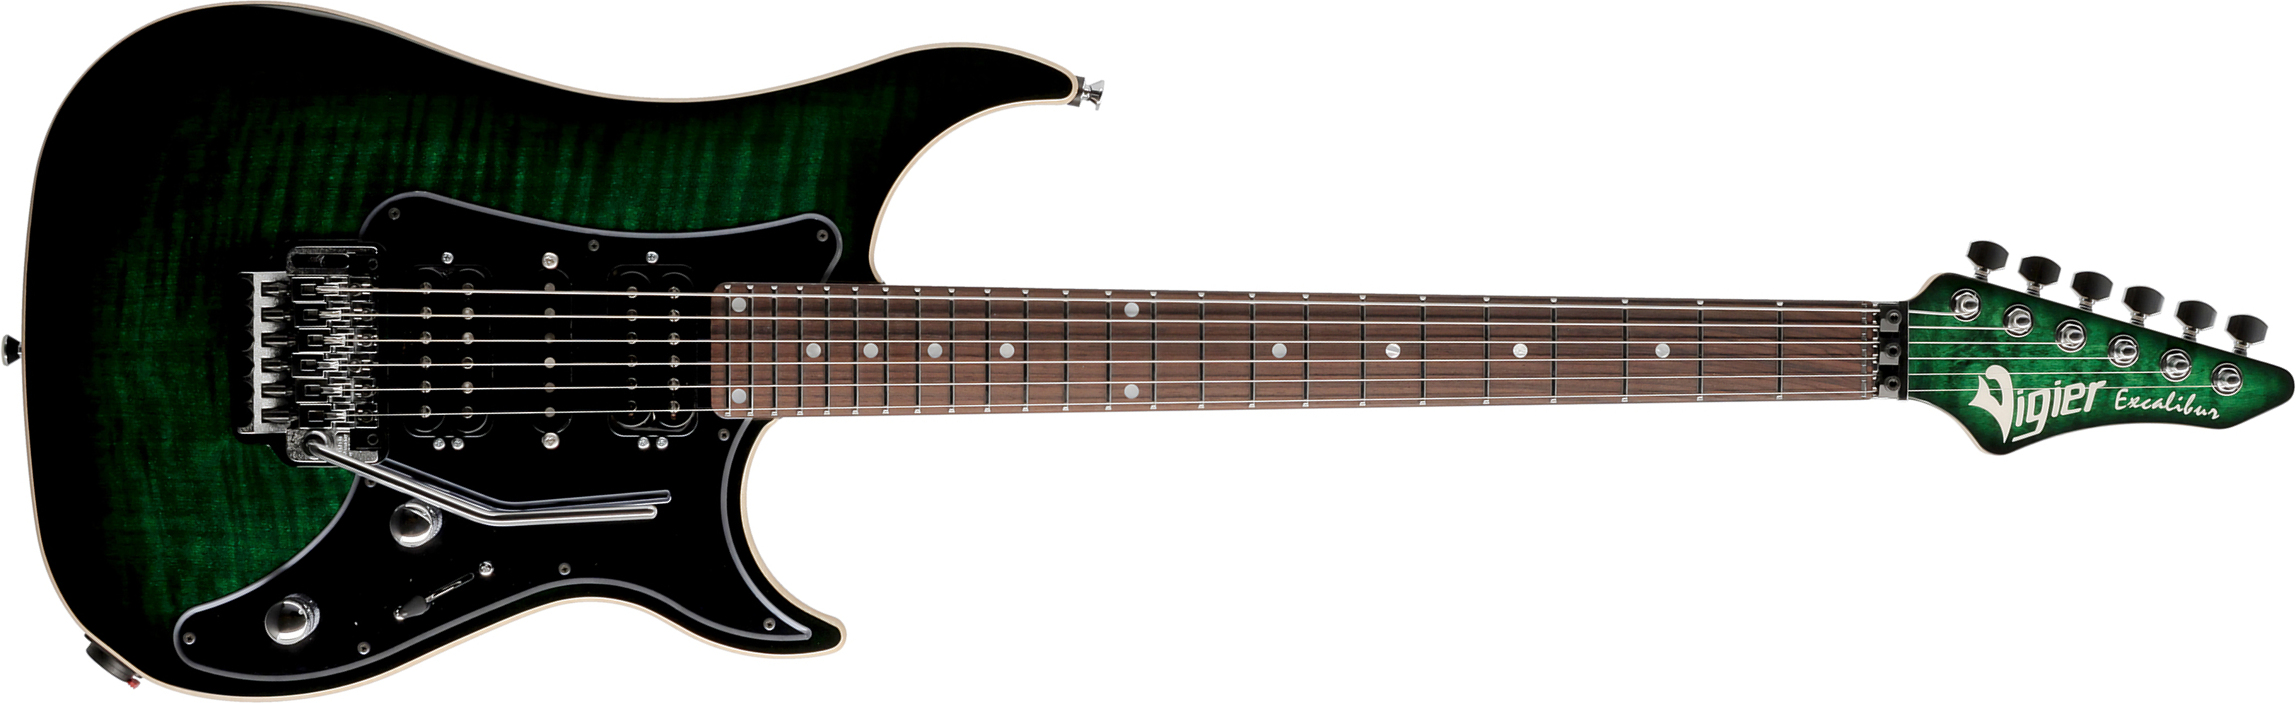 Vigier Excalibur Custom Hsh Fr Rw - Mysterious Green - Guitare Électrique Forme Str - Main picture